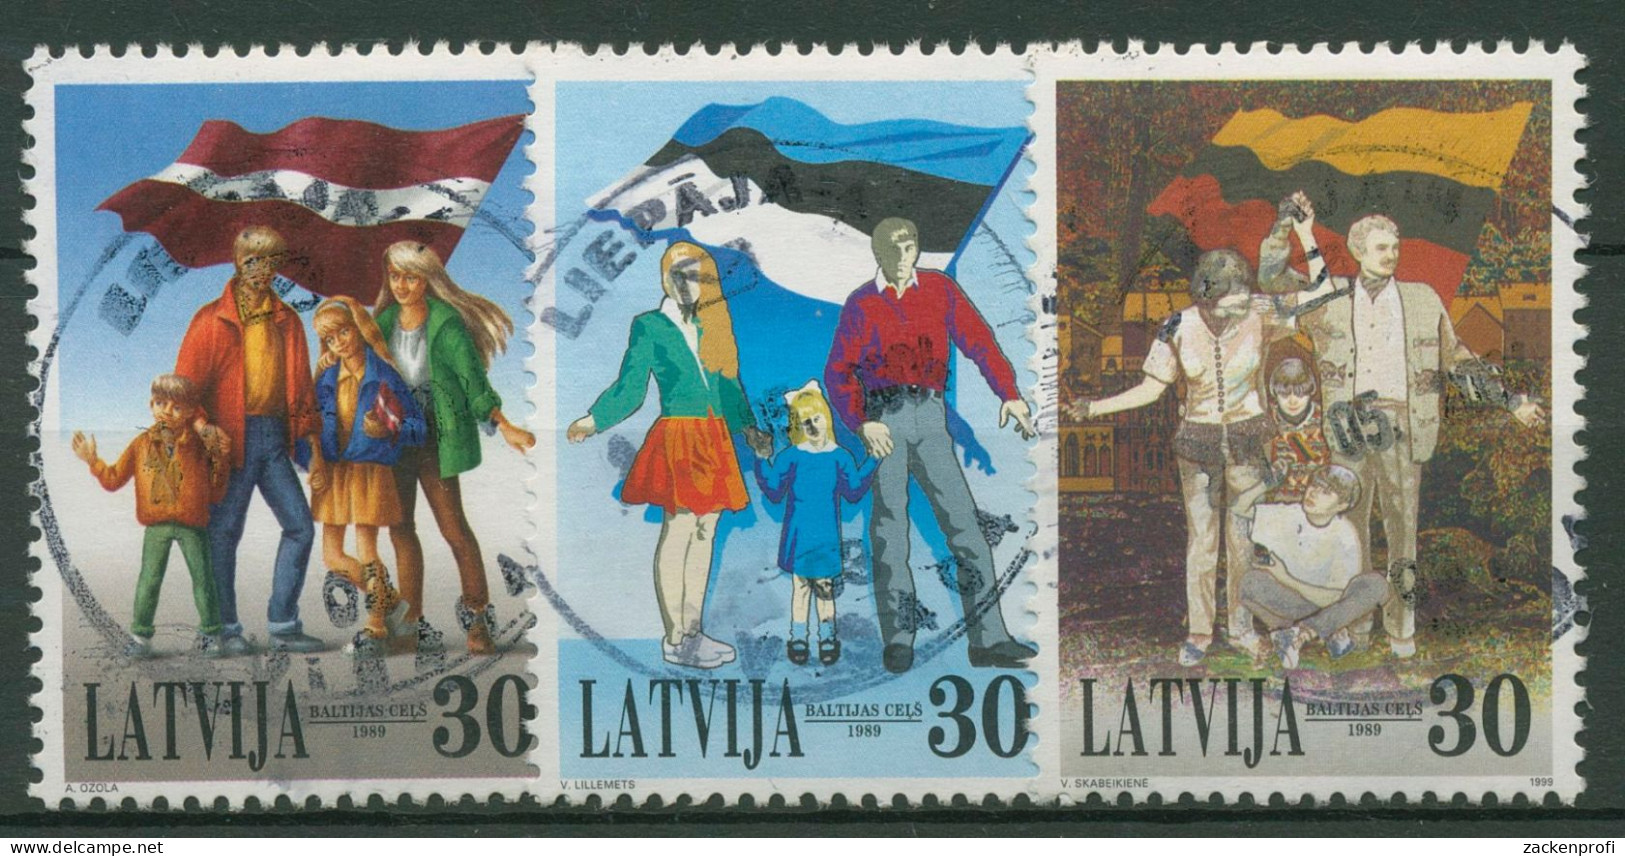 Lettland 1999 Jahrestag Des Baltischen Weges Blockeinzelmarken 507/09 Gestempelt - Latvia